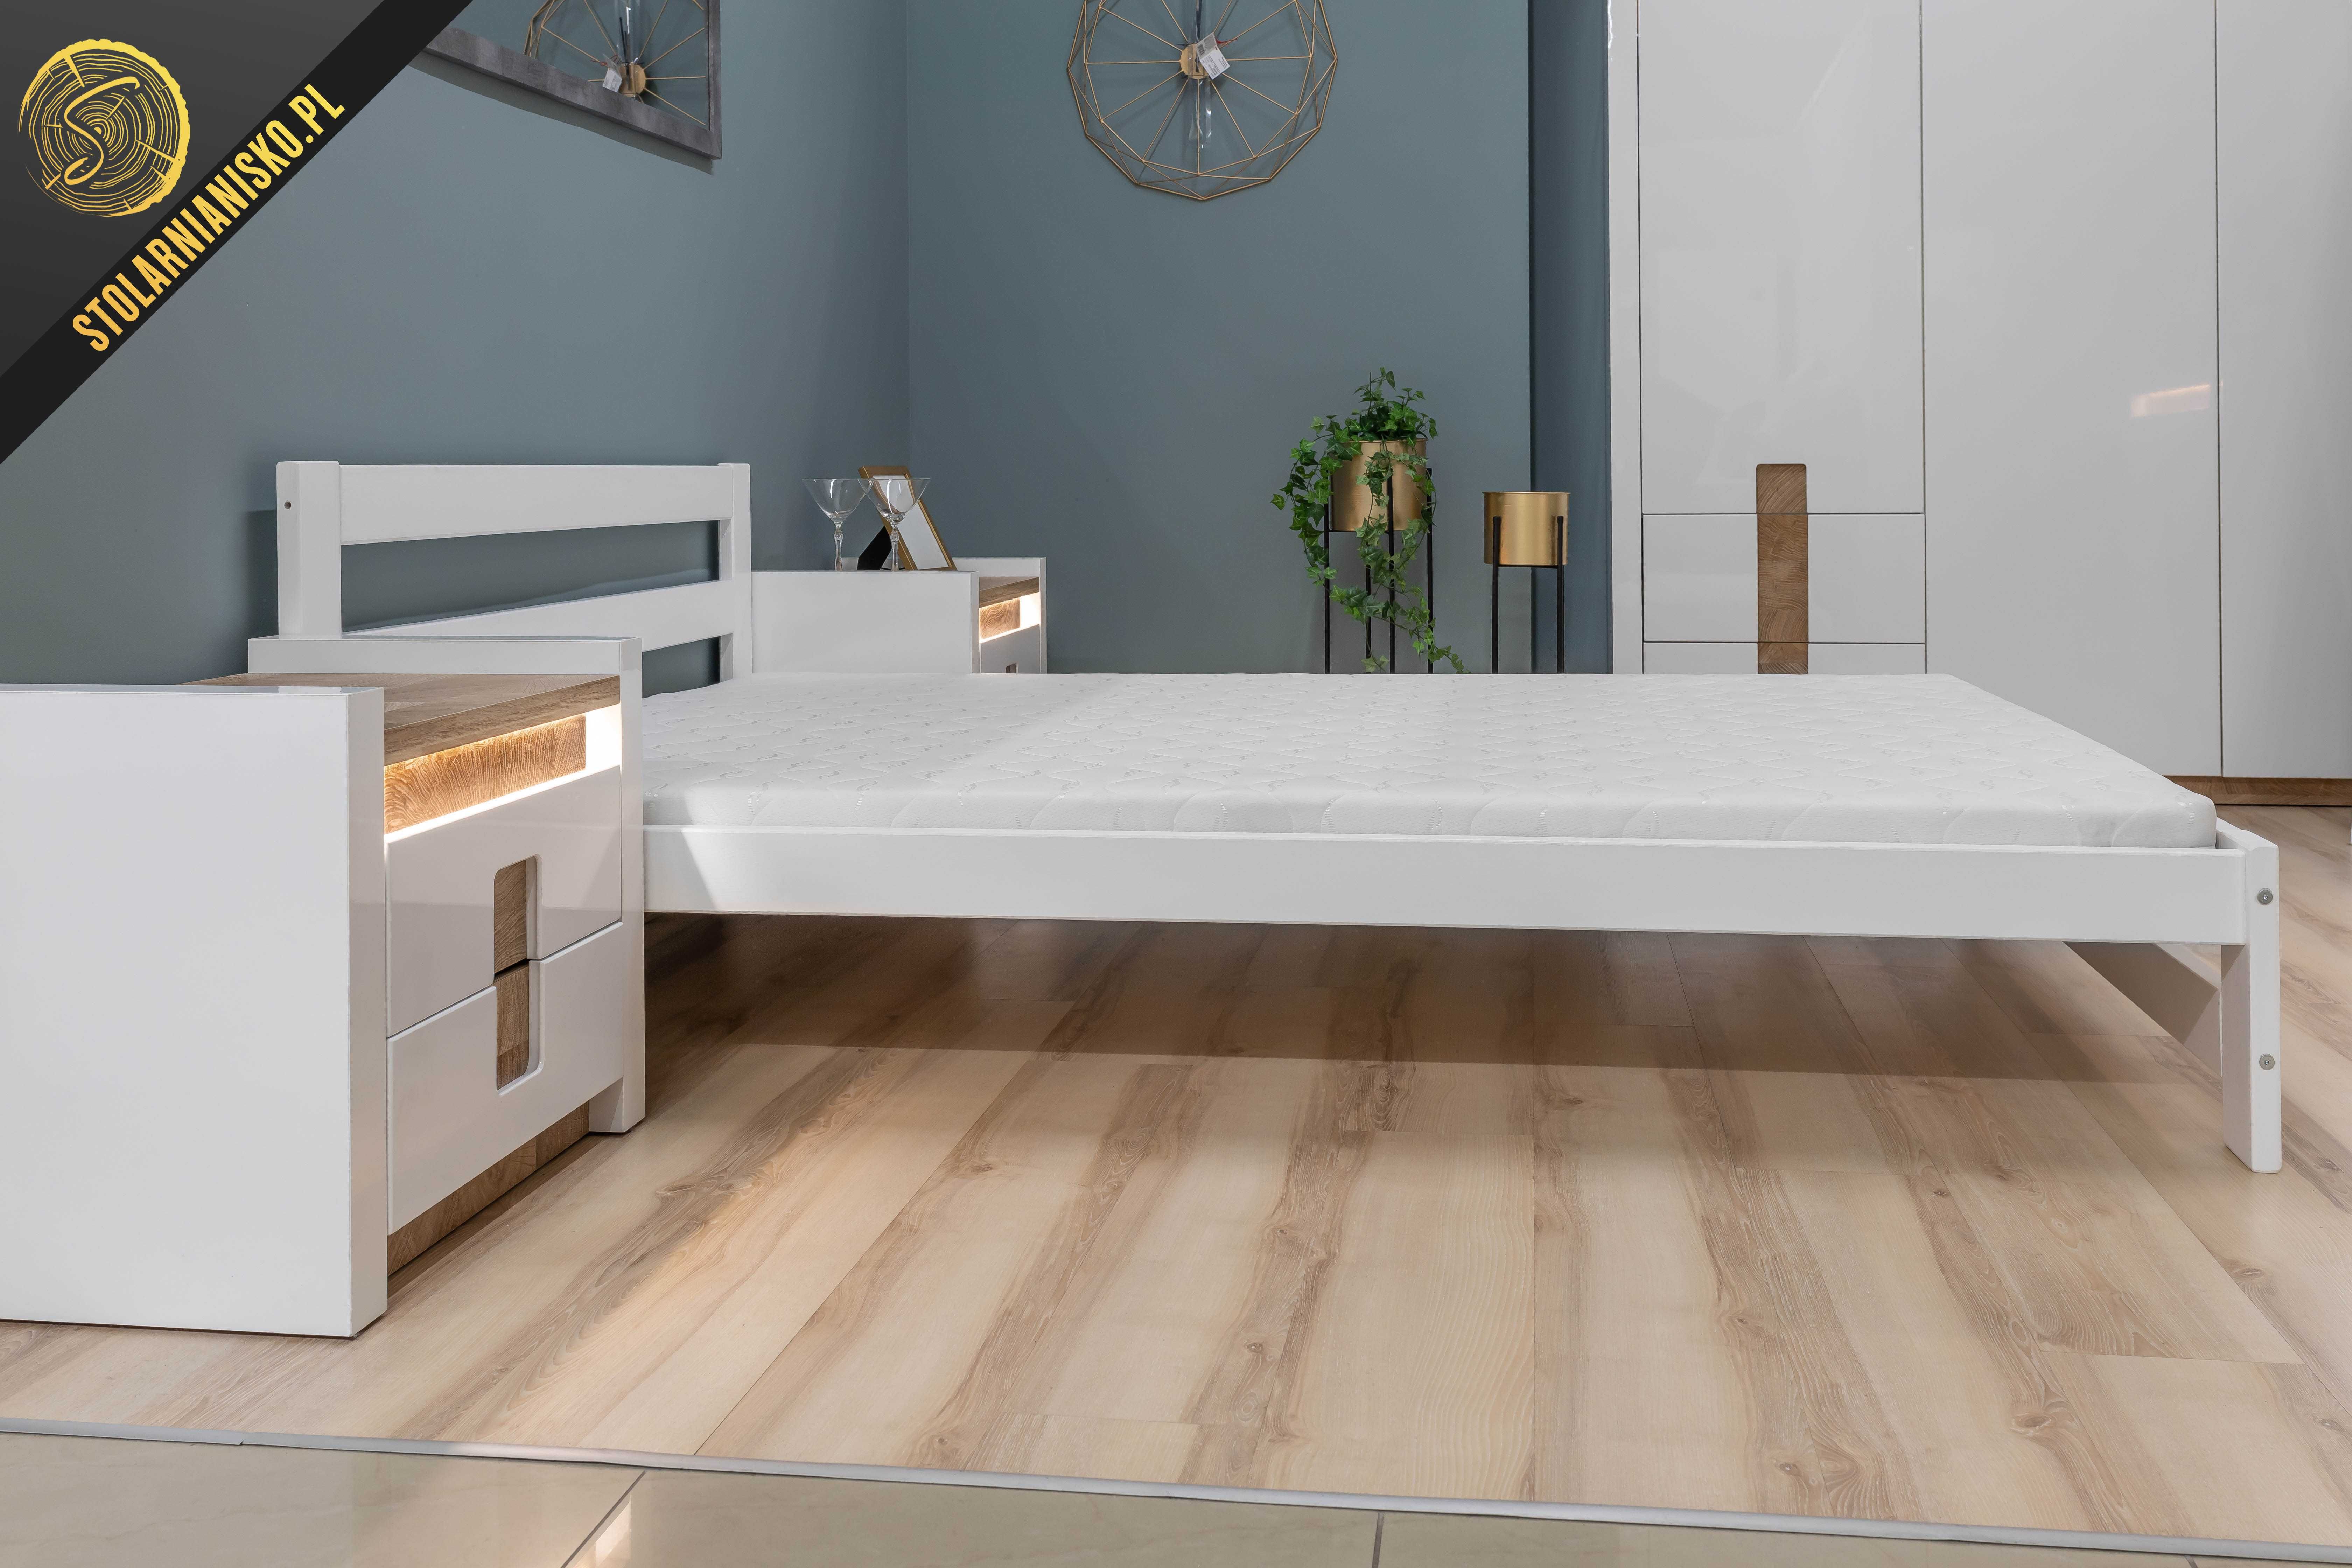 Łóżko drewniane sosnowe lakierowane białe 140x200 od Producenta